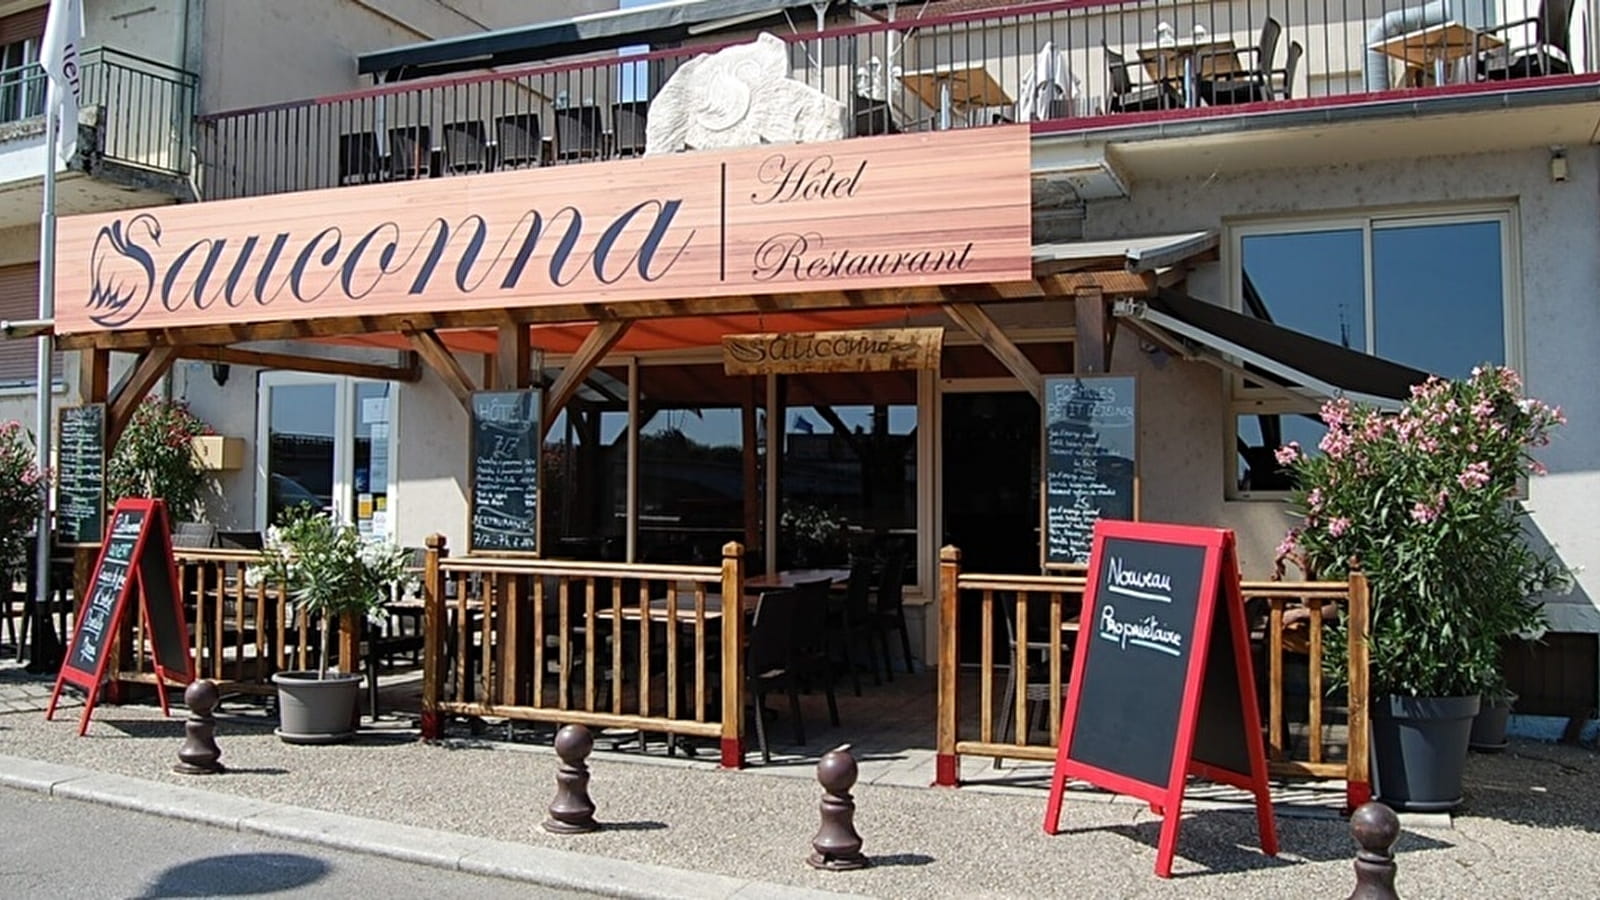 Hôtel-restaurant Le Sauconna